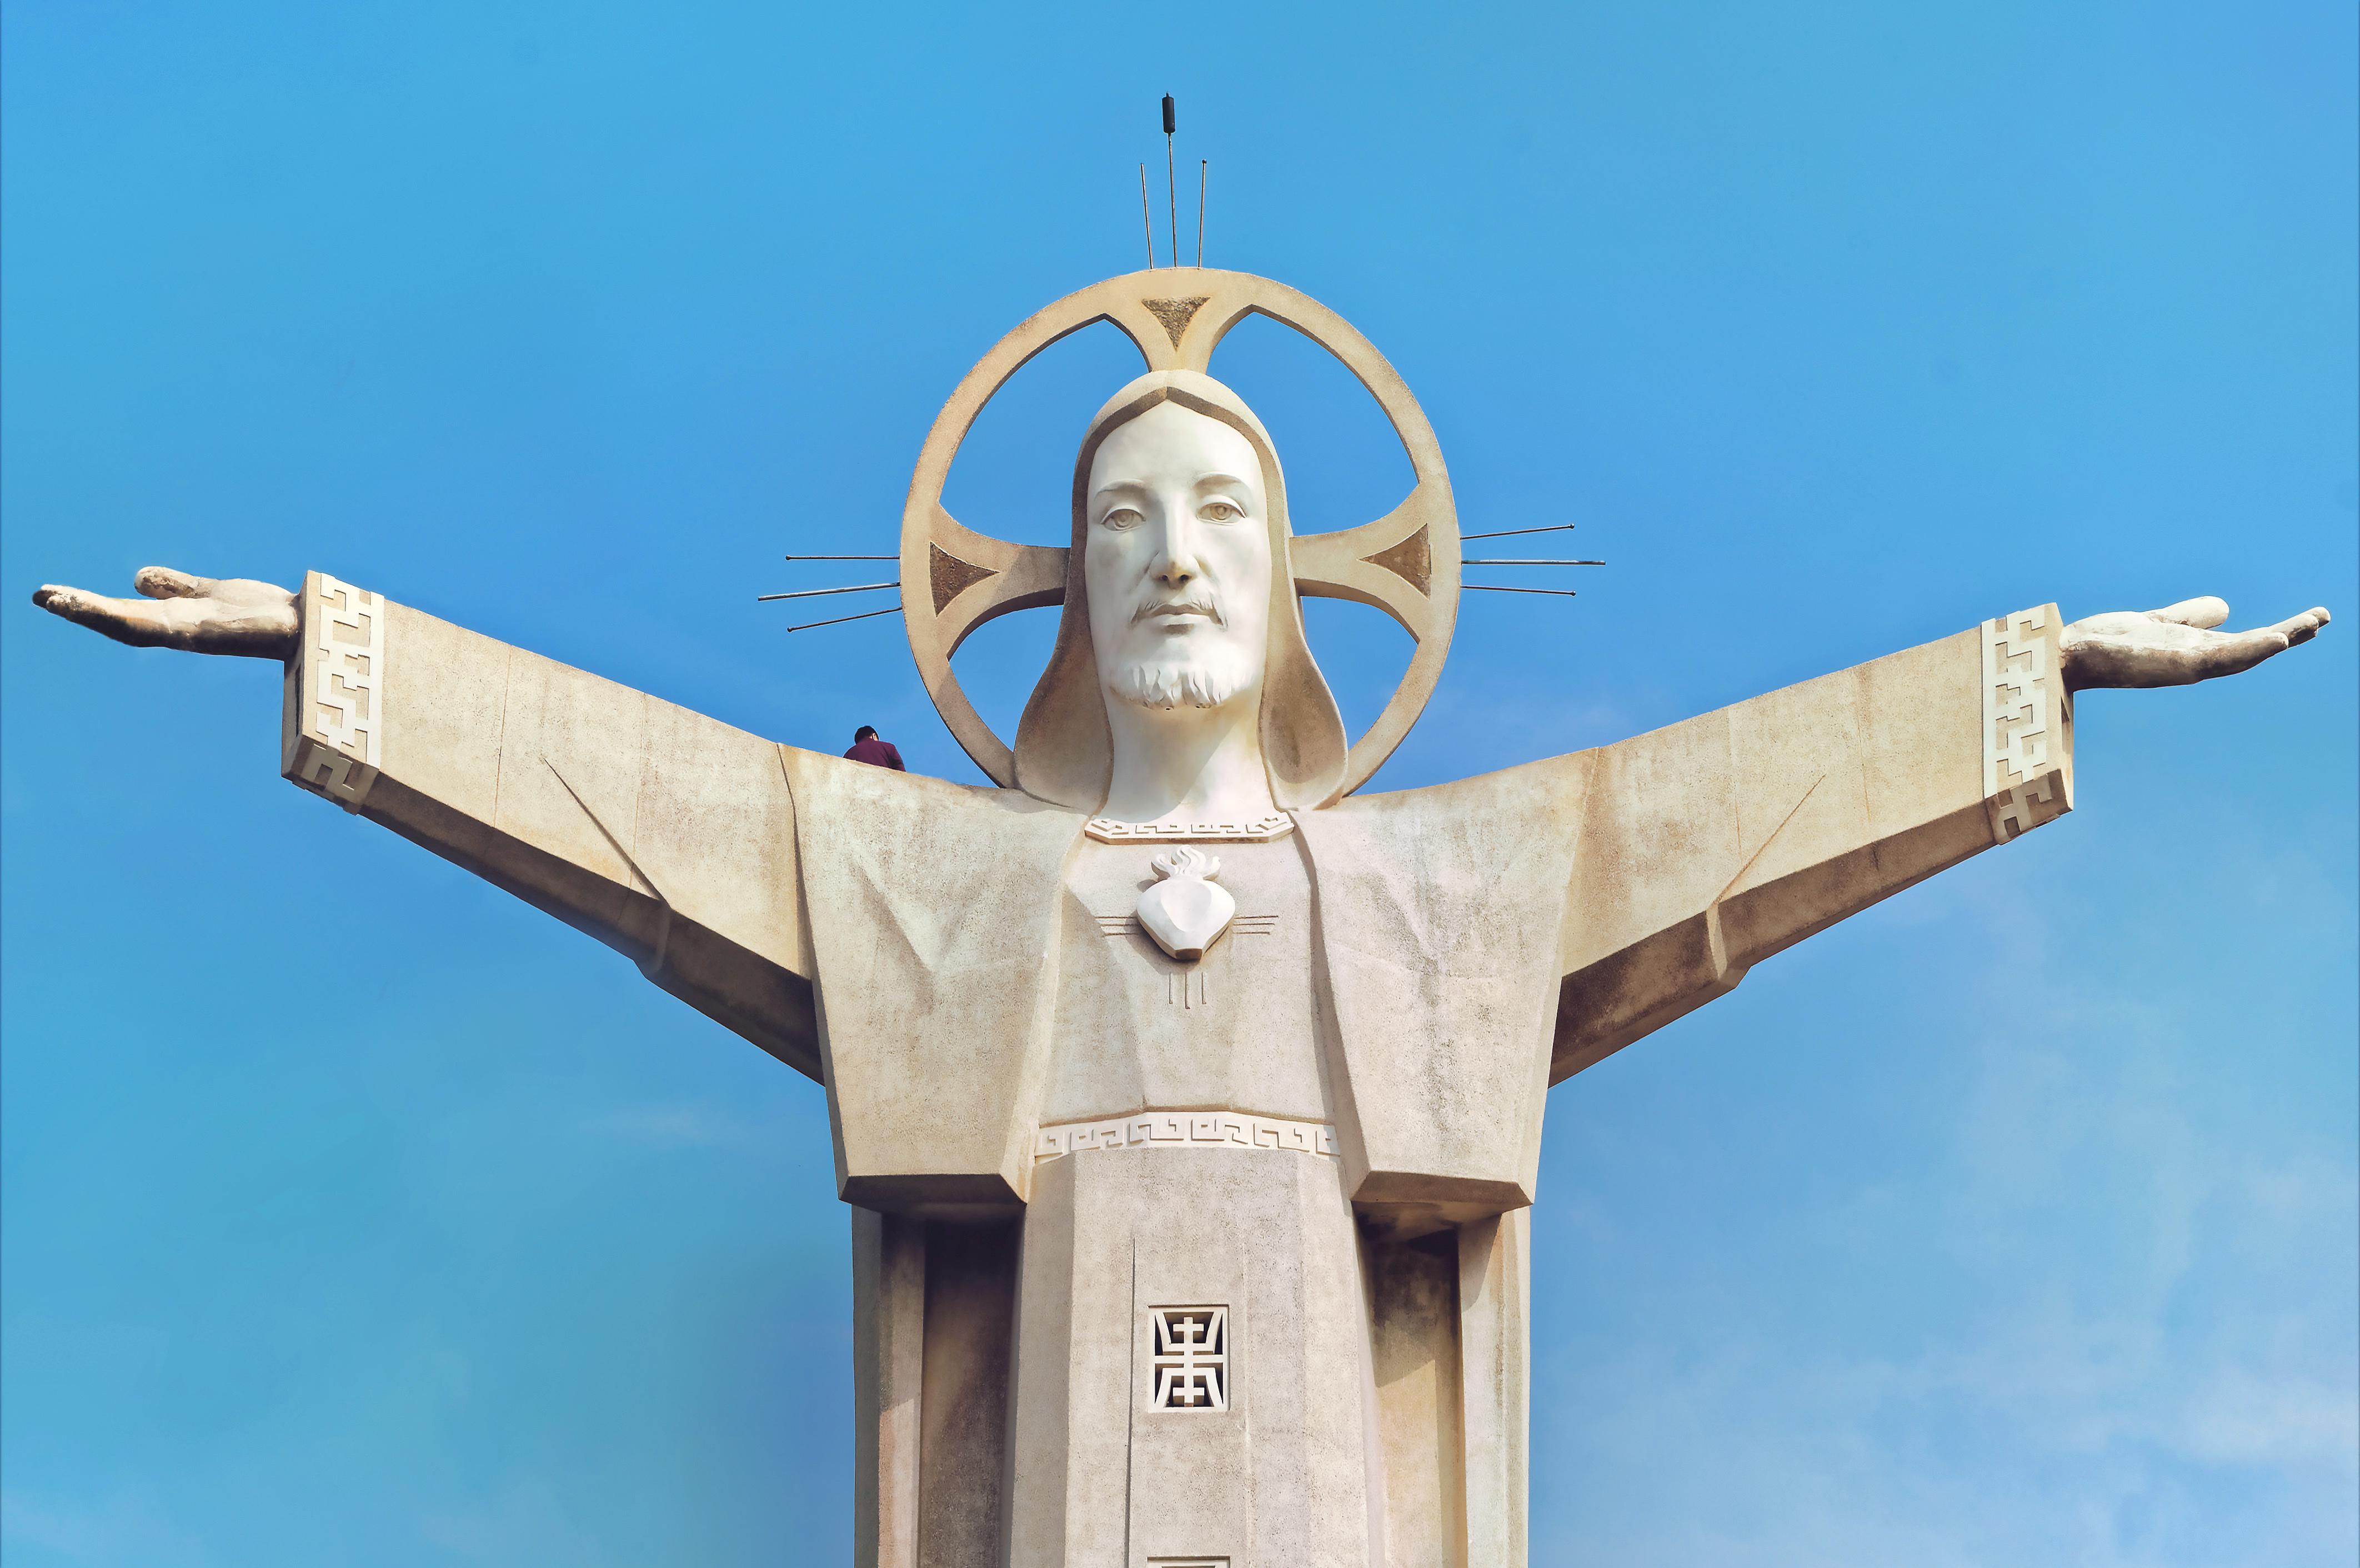 Đài tượng Chúa Giêsu là một địa điểm du lịch nổi tiếng ở Brasil, đồng thời là một công trình kiến trúc nổi bật và đẹp mắt. Xem ảnh liên quan để tìm hiểu thêm về điều này và cảm nhận sự kính trọng và tôn vinh tuyệt vời của nó.